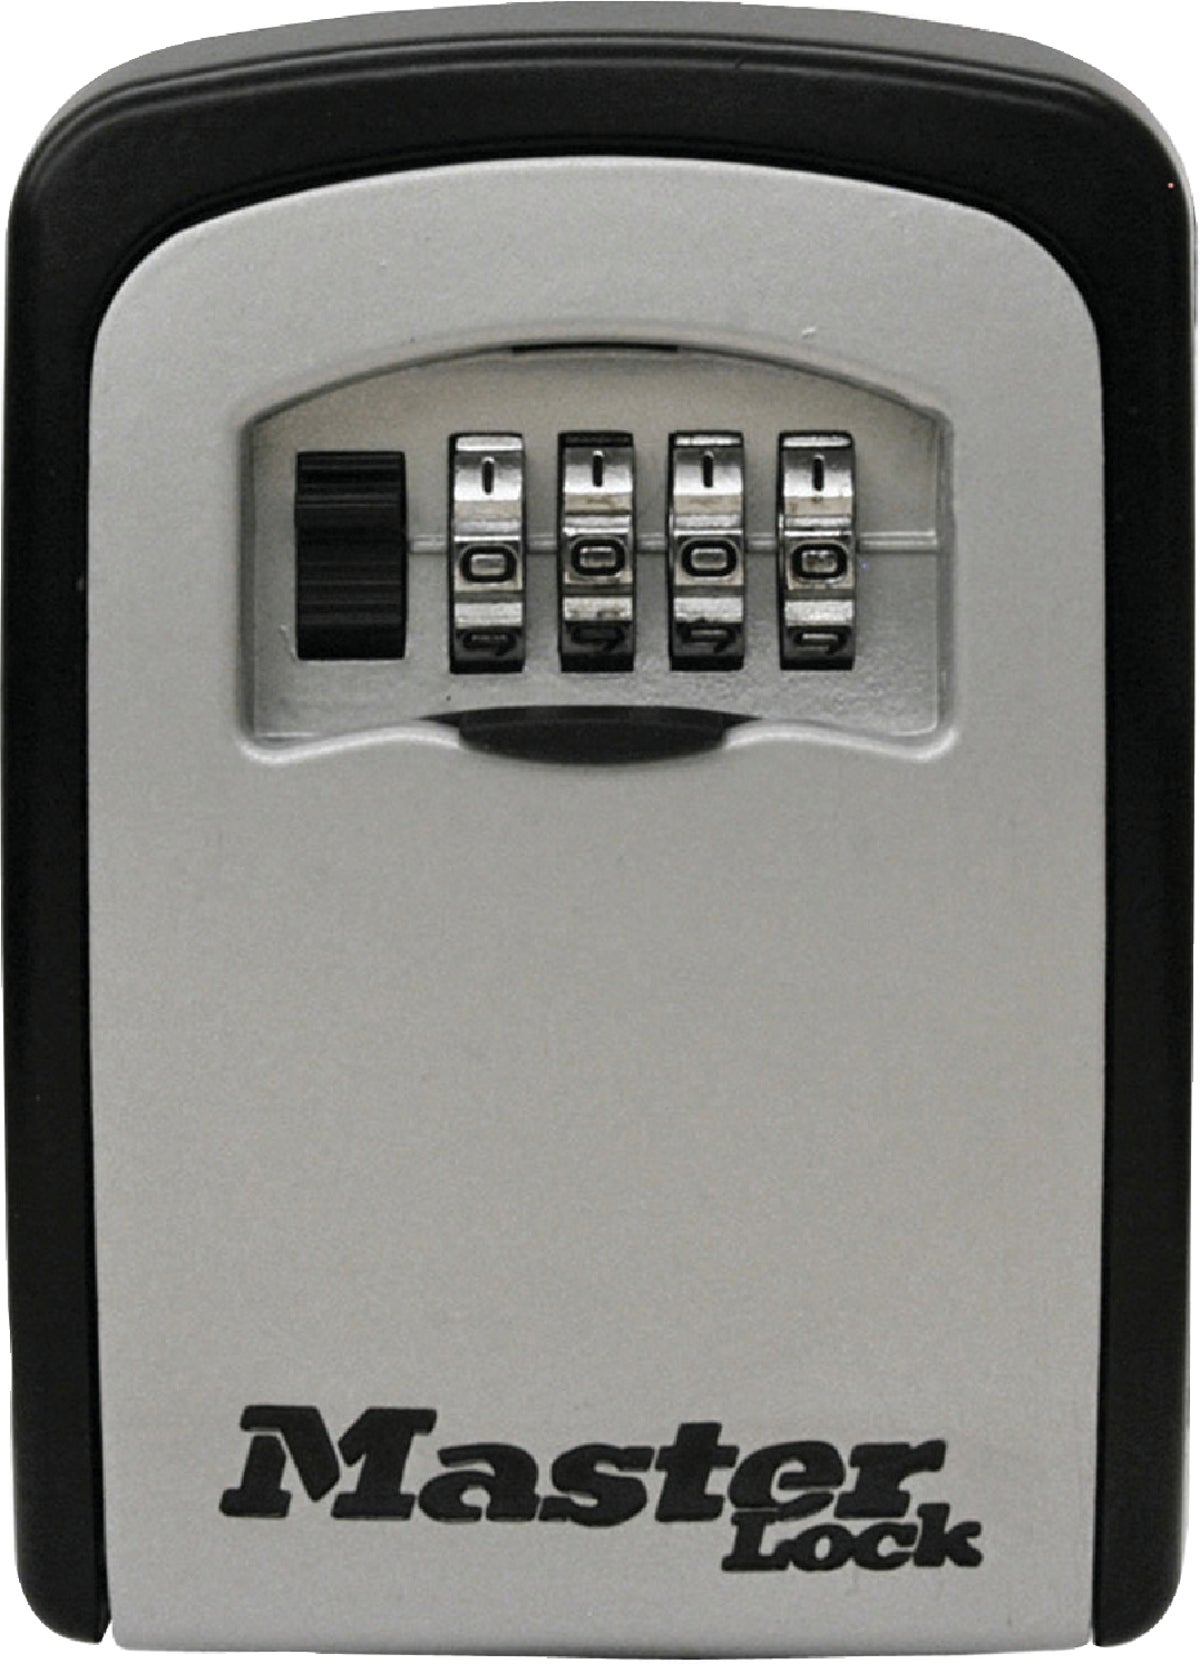 Buy Master Lock Combination Key Safe 325 In W X 725 In H X 15 In